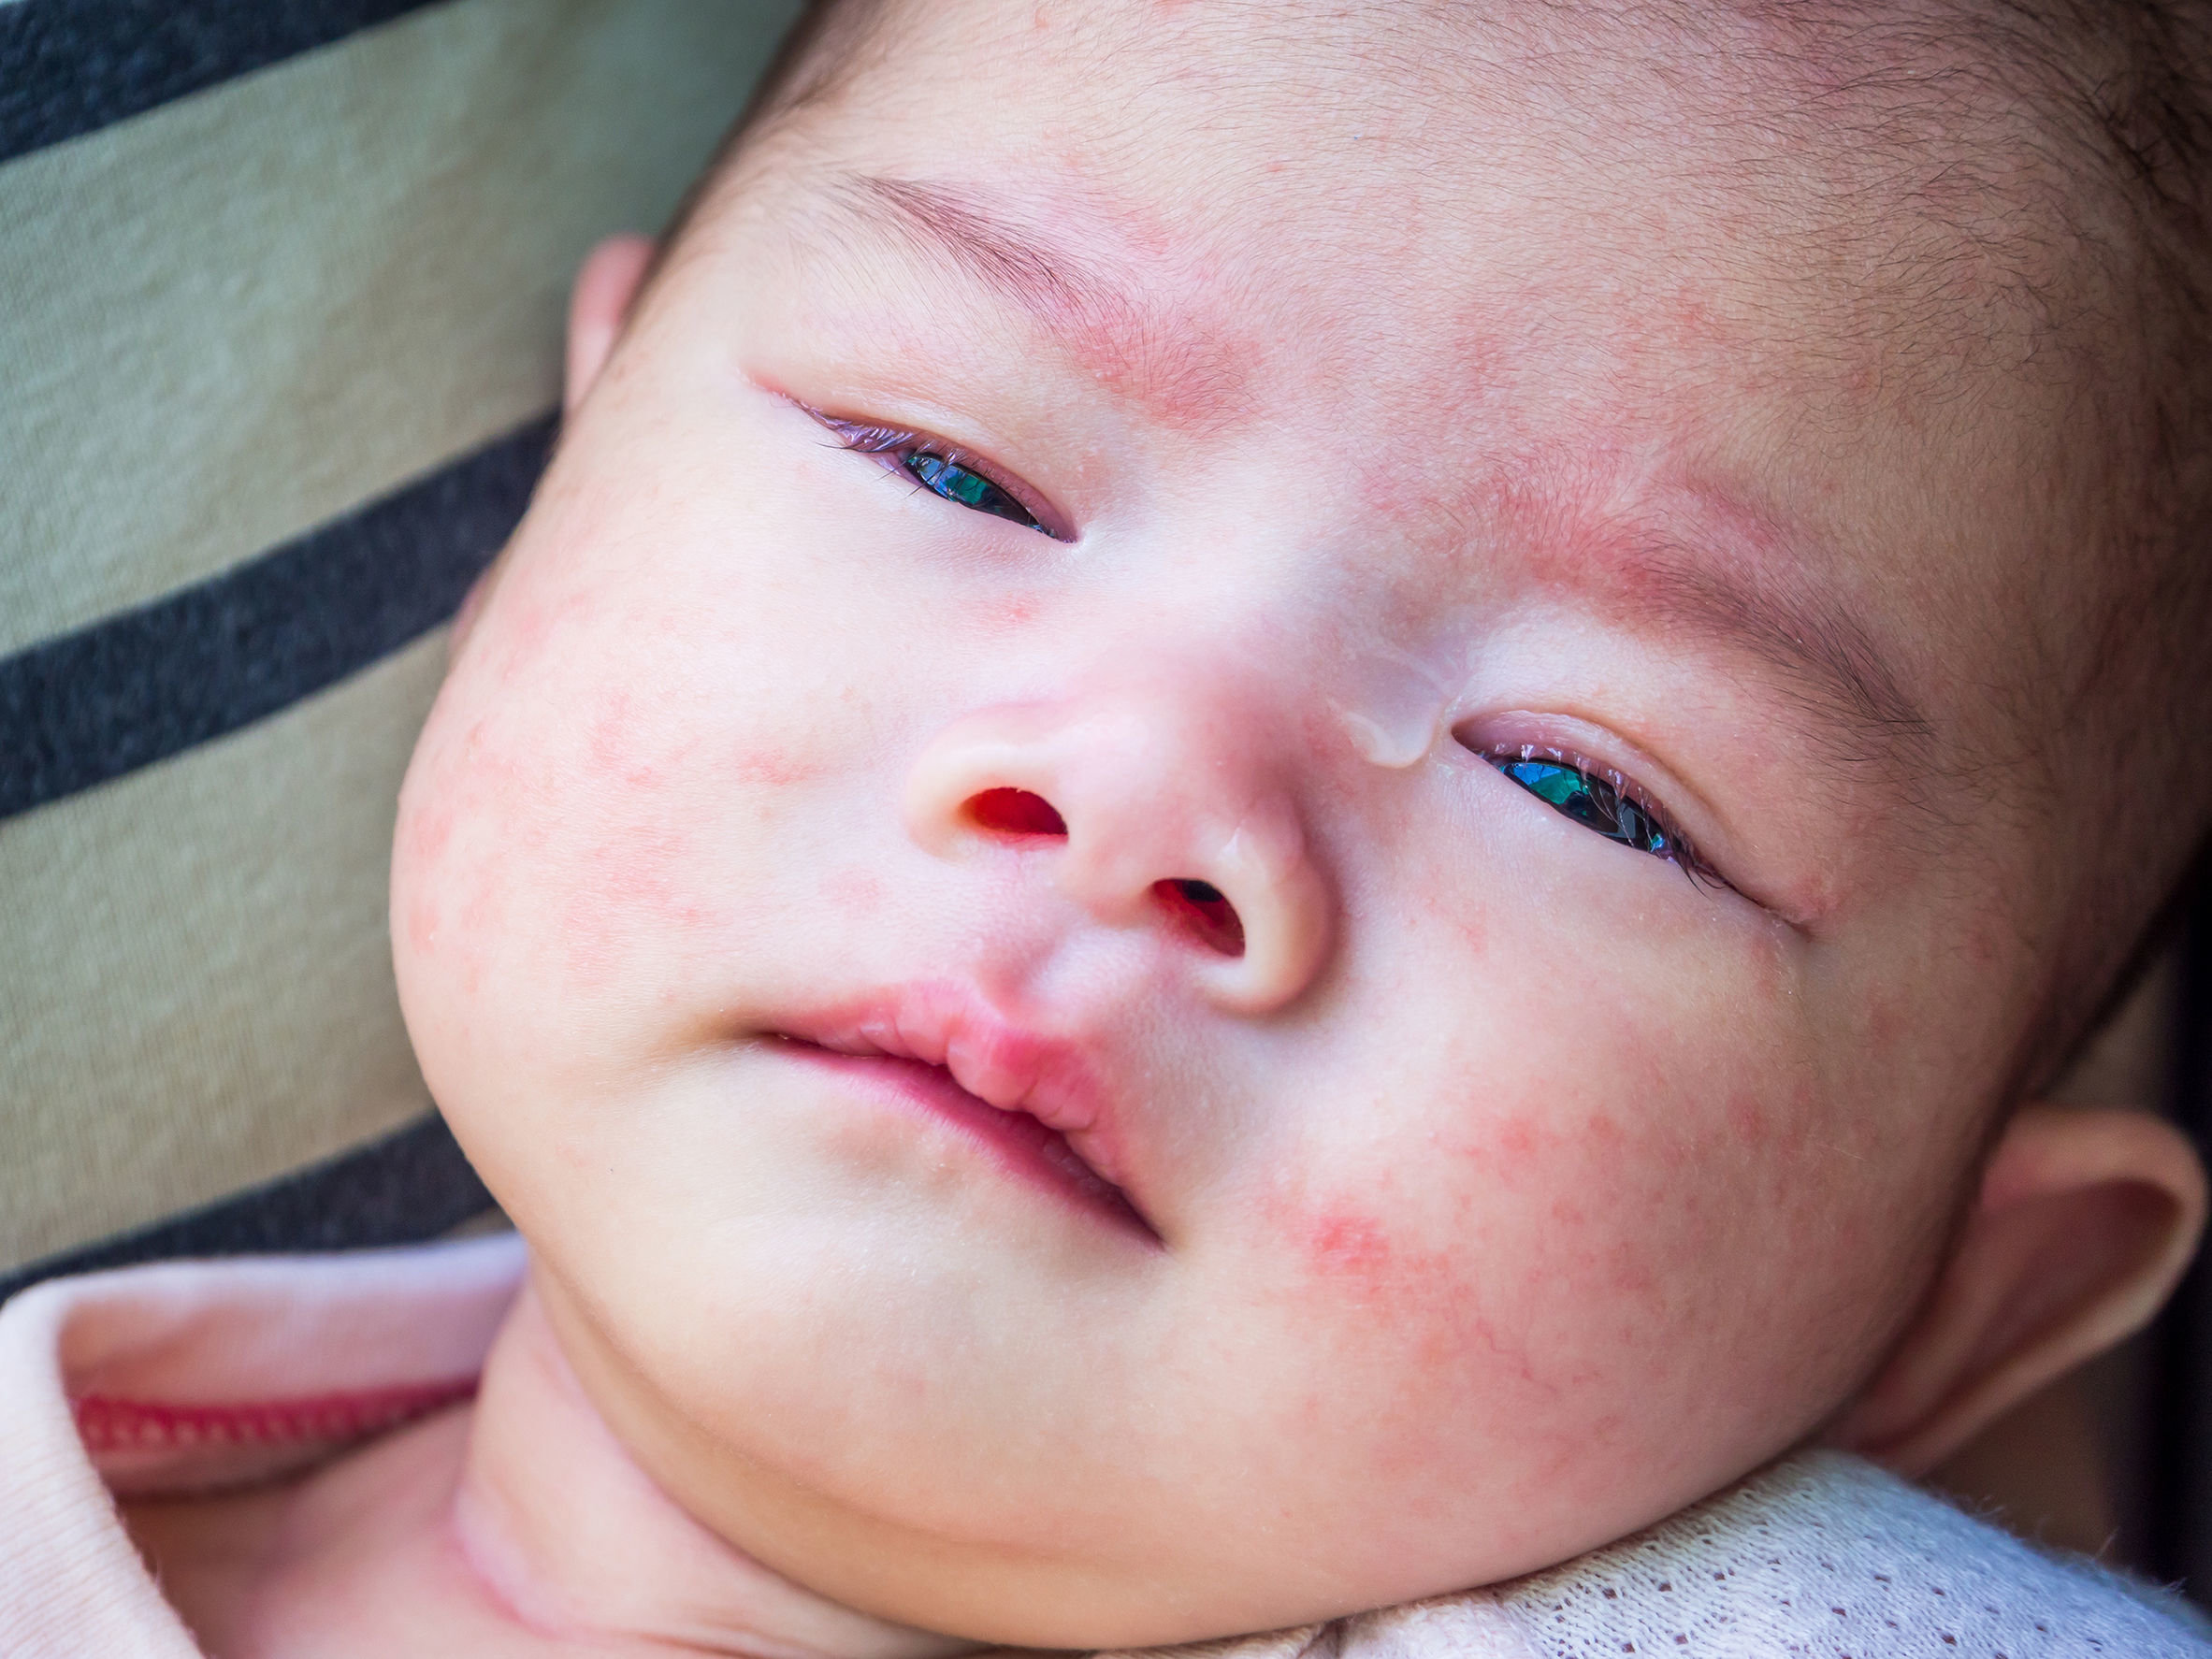 dermatitis en niños se debe prevenir desde el nacimiento - Salud -